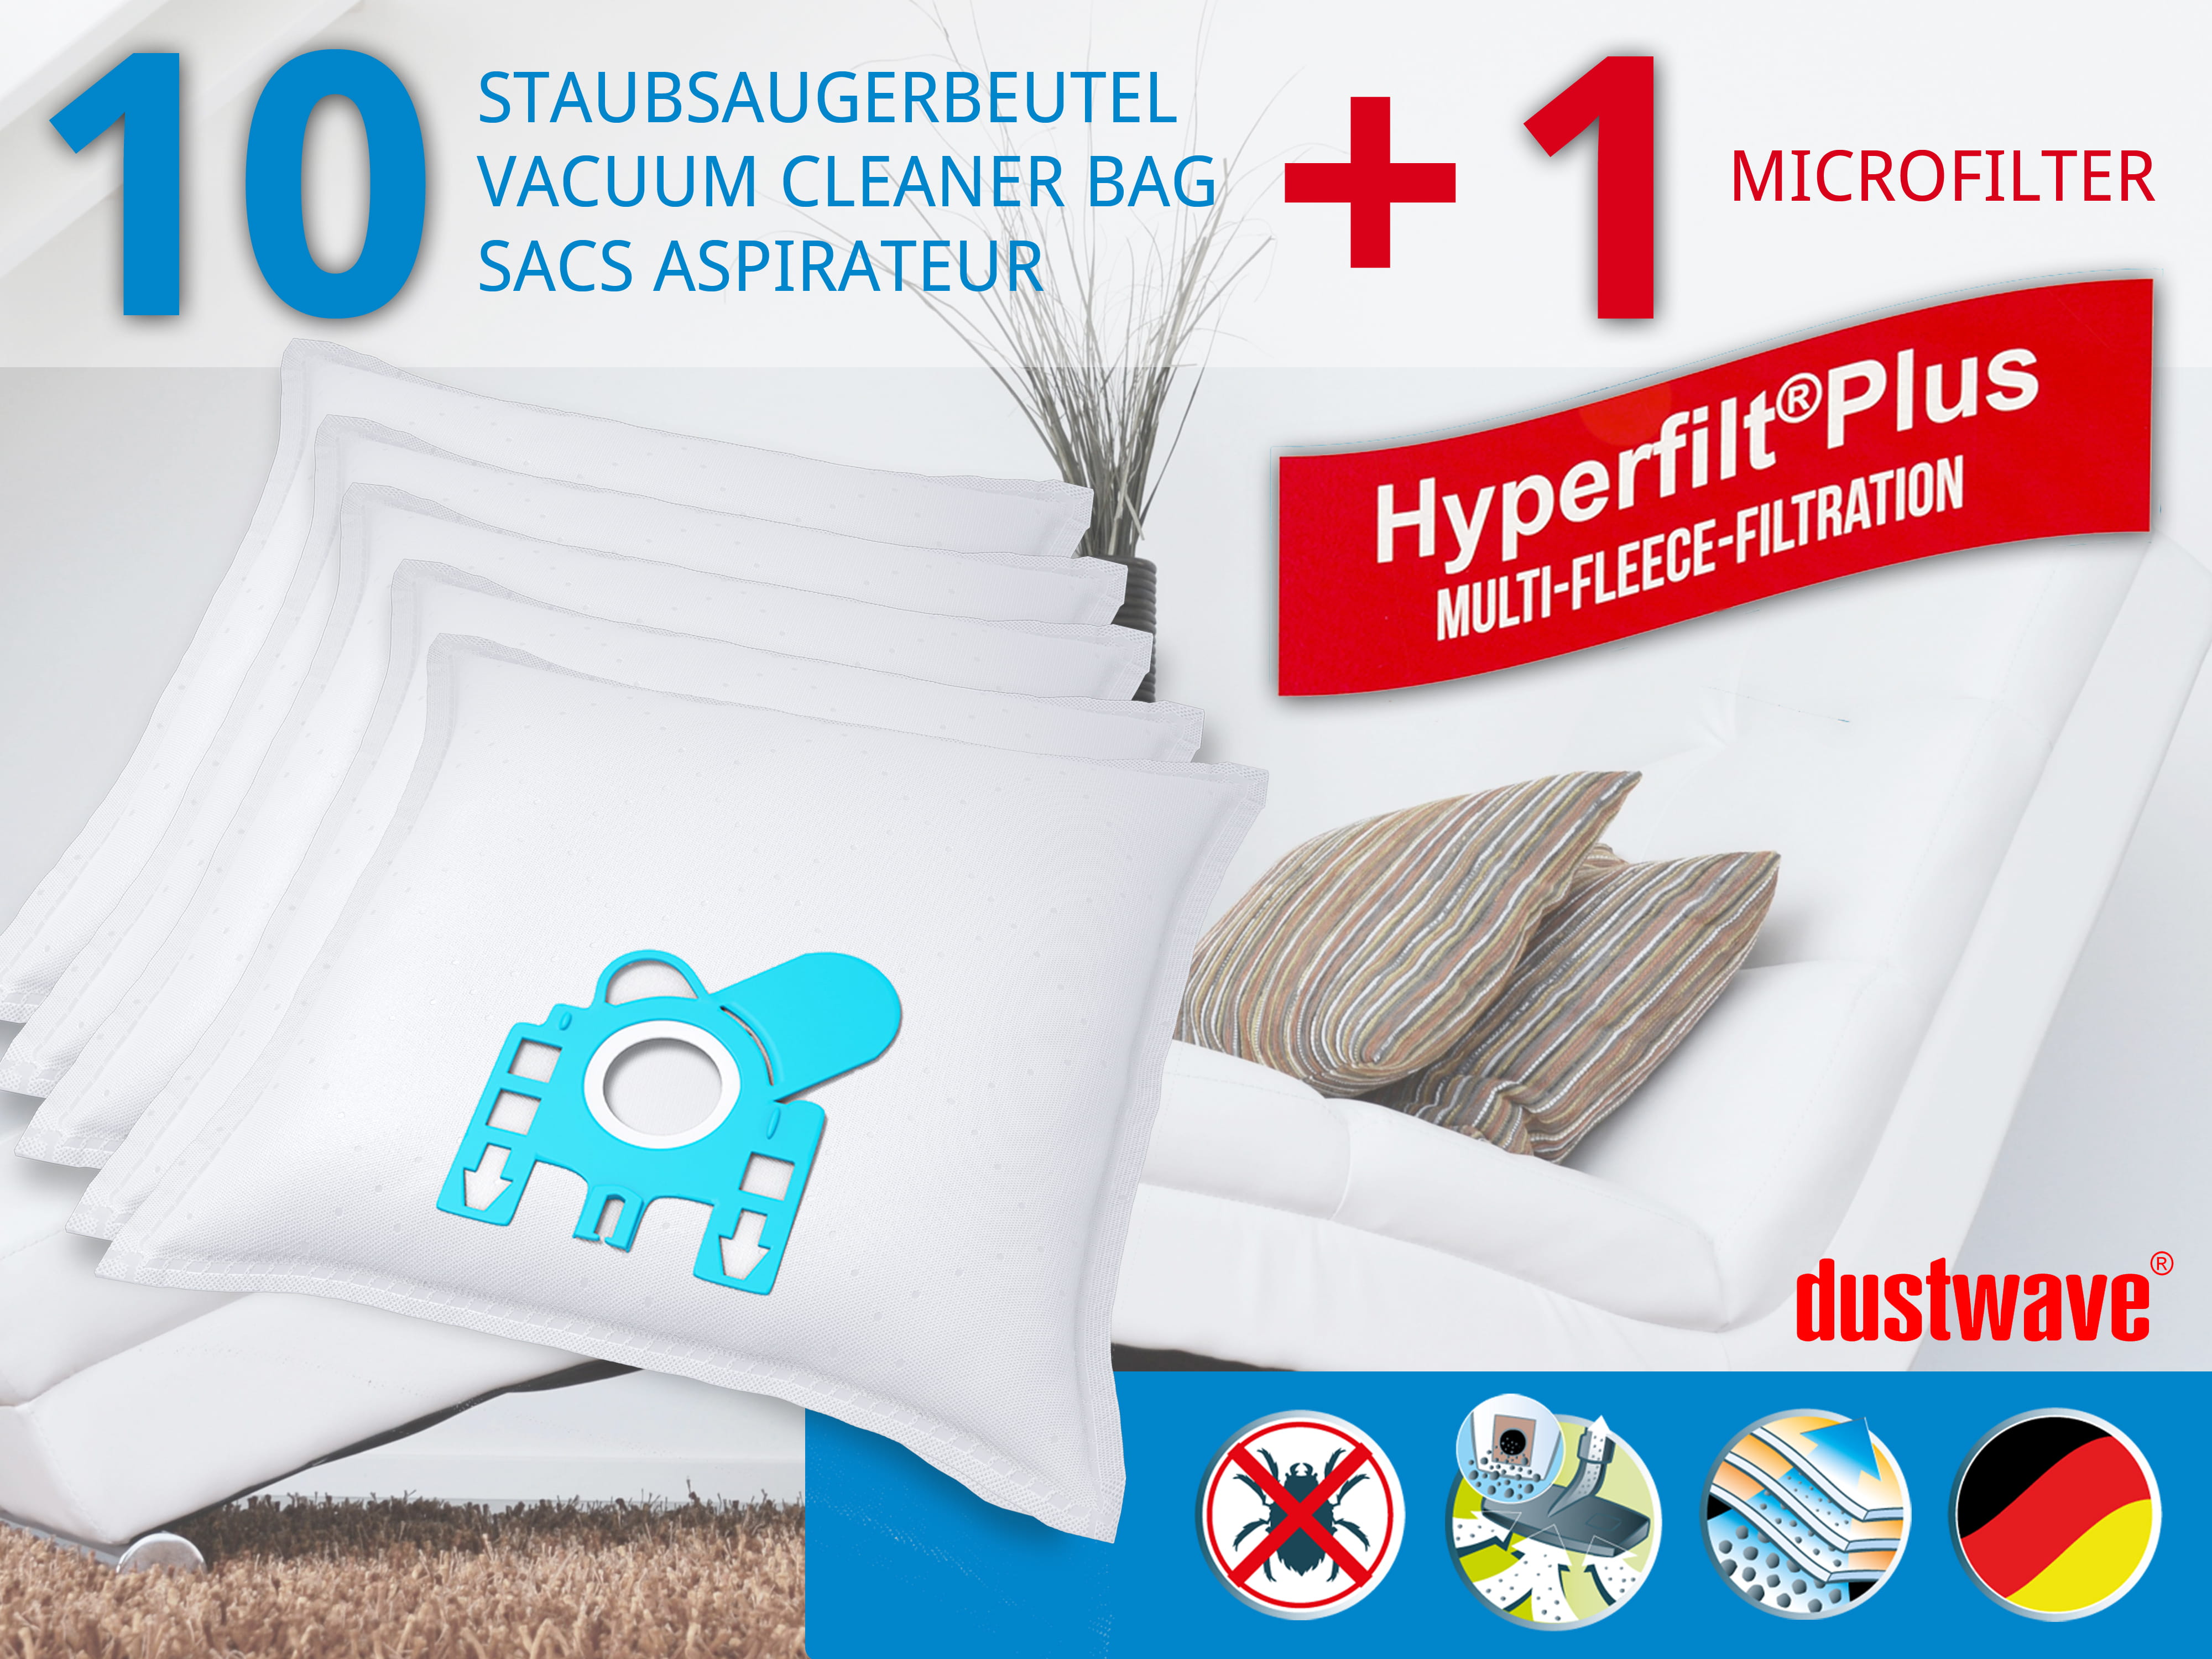 Dustwave® 10 Staubsaugerbeutel für Hoover Micropower SC 120 - hocheffizient, mehrlagiges Mikrovlies mit Hygieneverschluss - Made in Germany